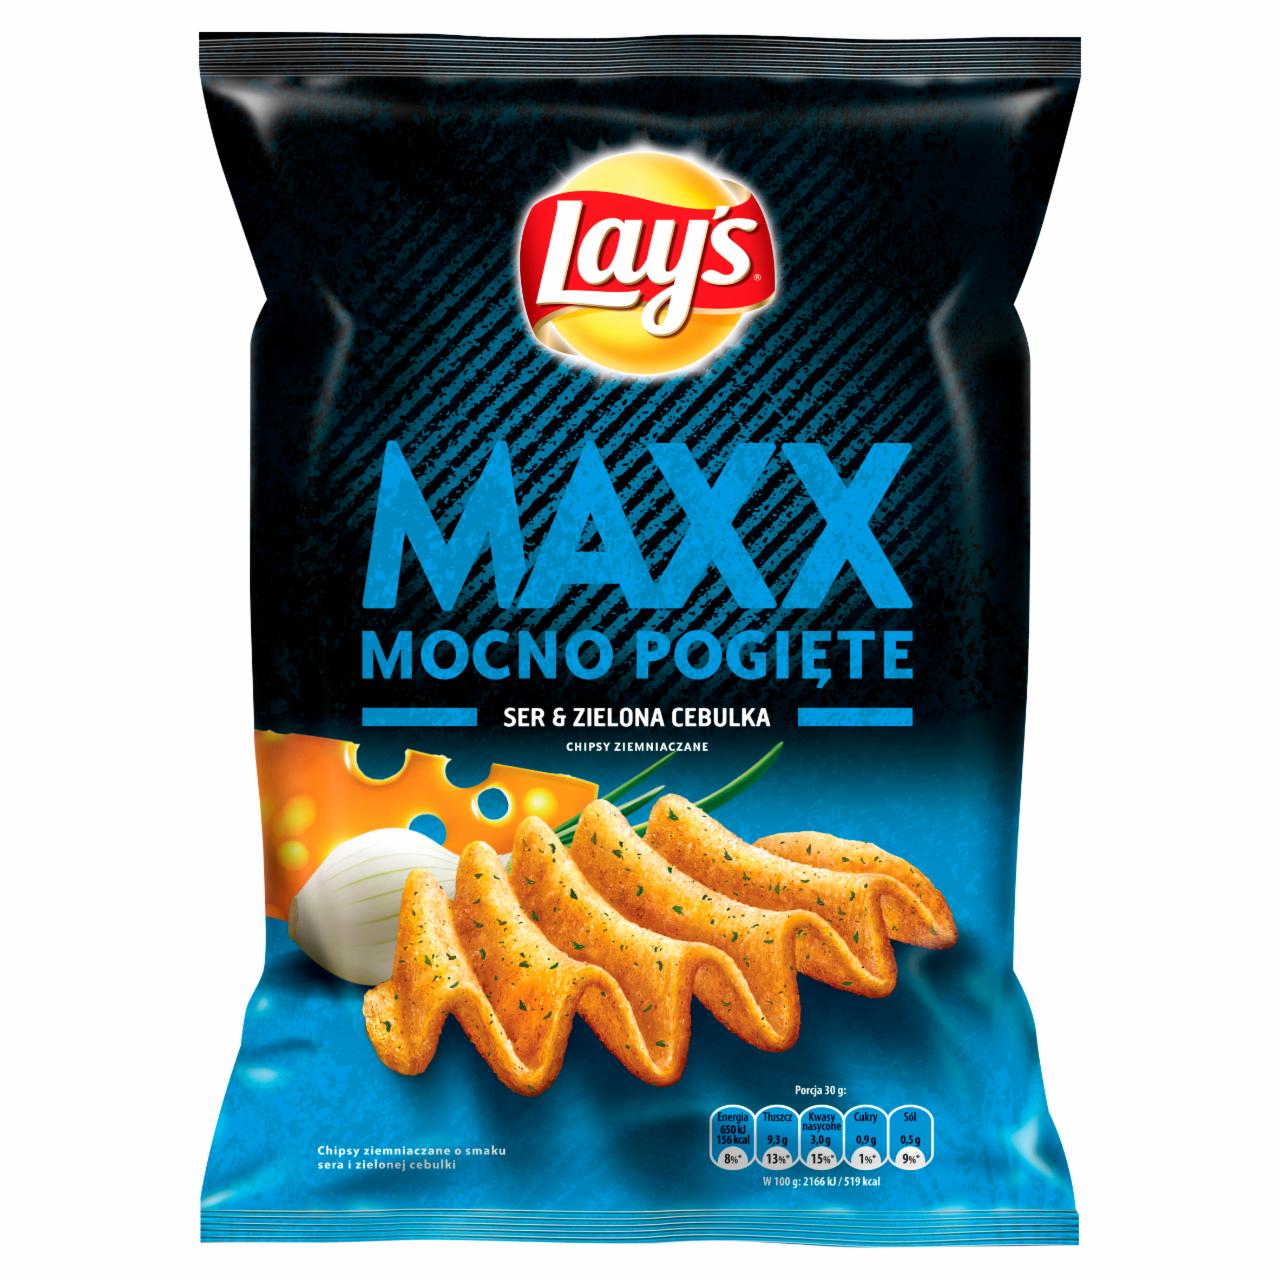 Zdjęcia - Lay's Maxx Mocno Pogięte Ser & Zielona cebulka Chipsy ziemniaczane 210 g